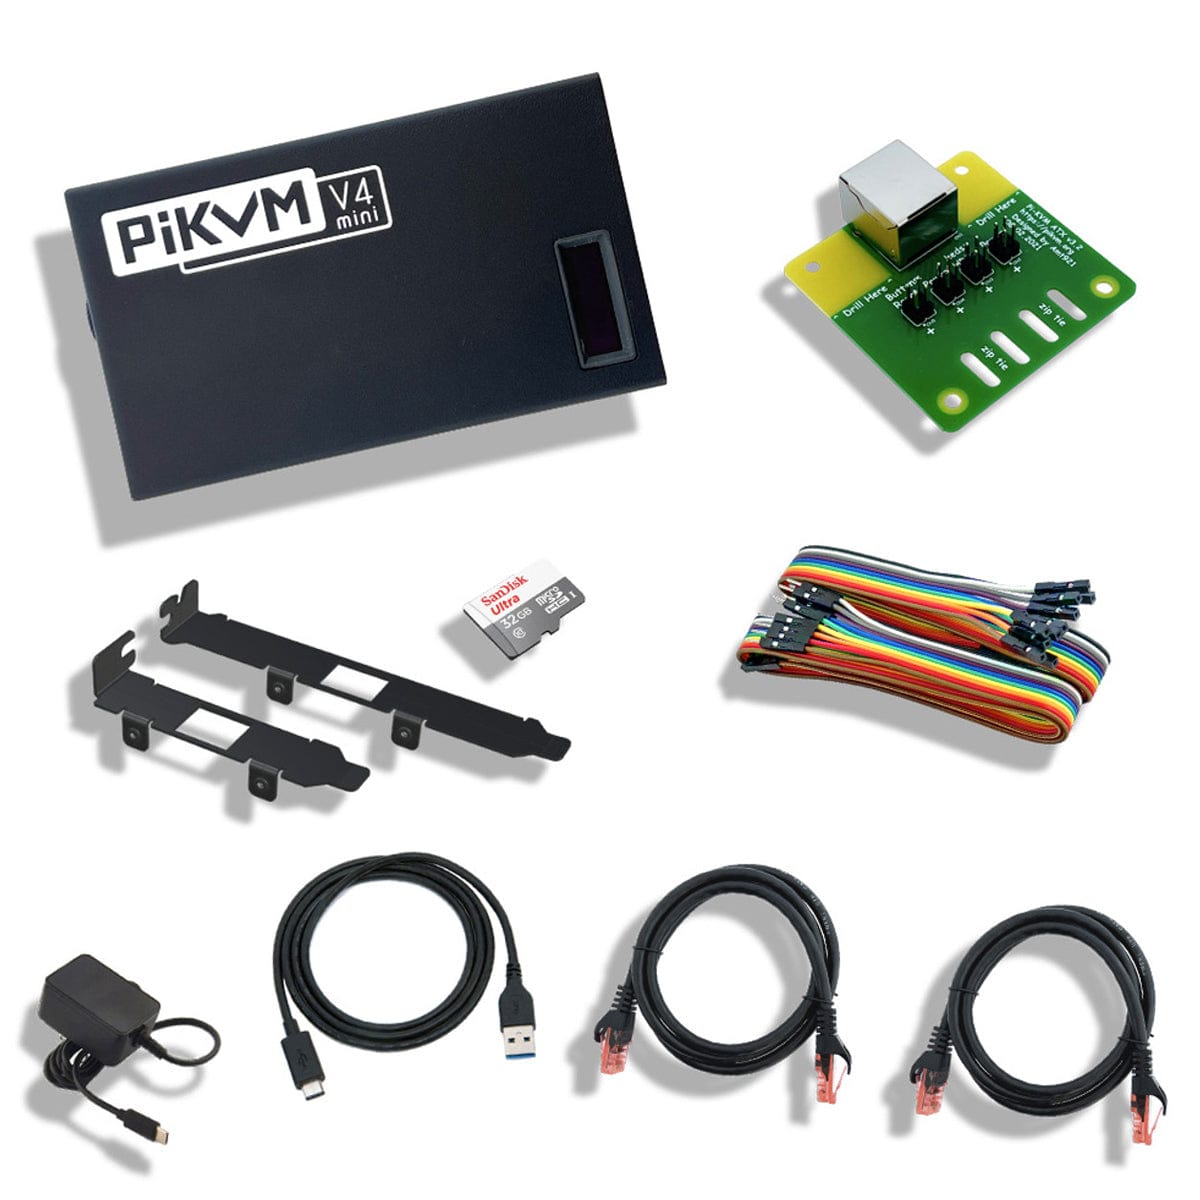 PiKVM V4 Mini - The Pi Hut